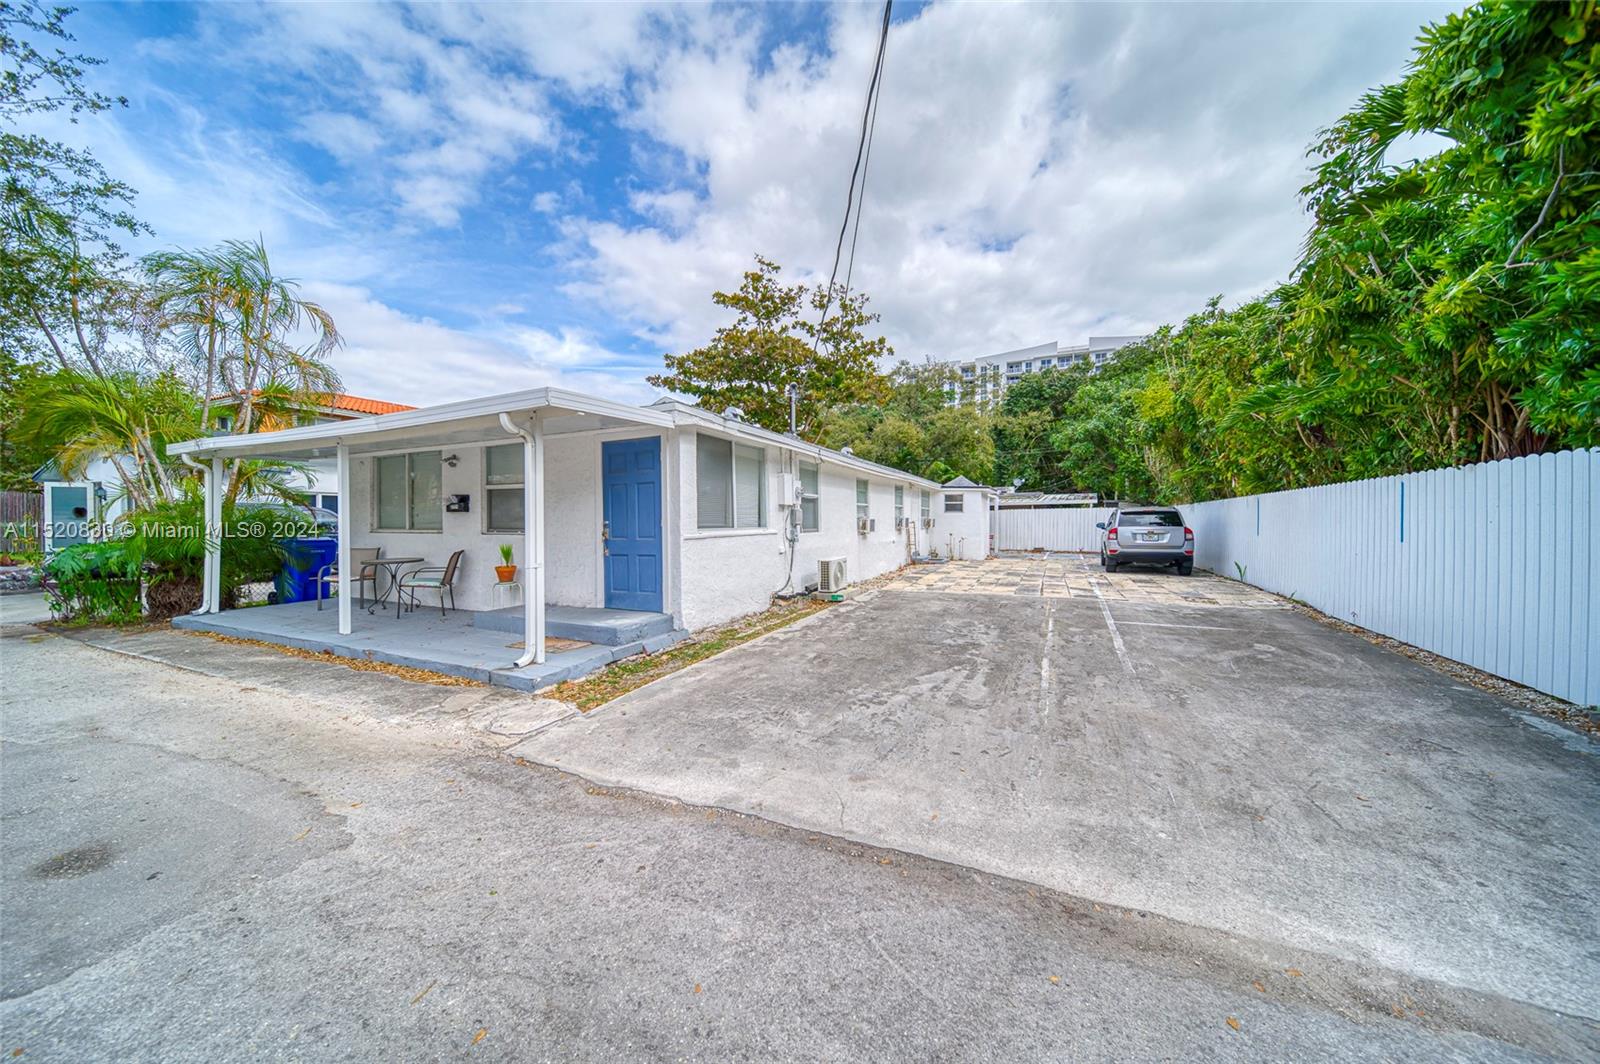 Rental Property at 2721 Sw 28th Ct, Miami, Broward County, Florida -  - $995,000 MO.